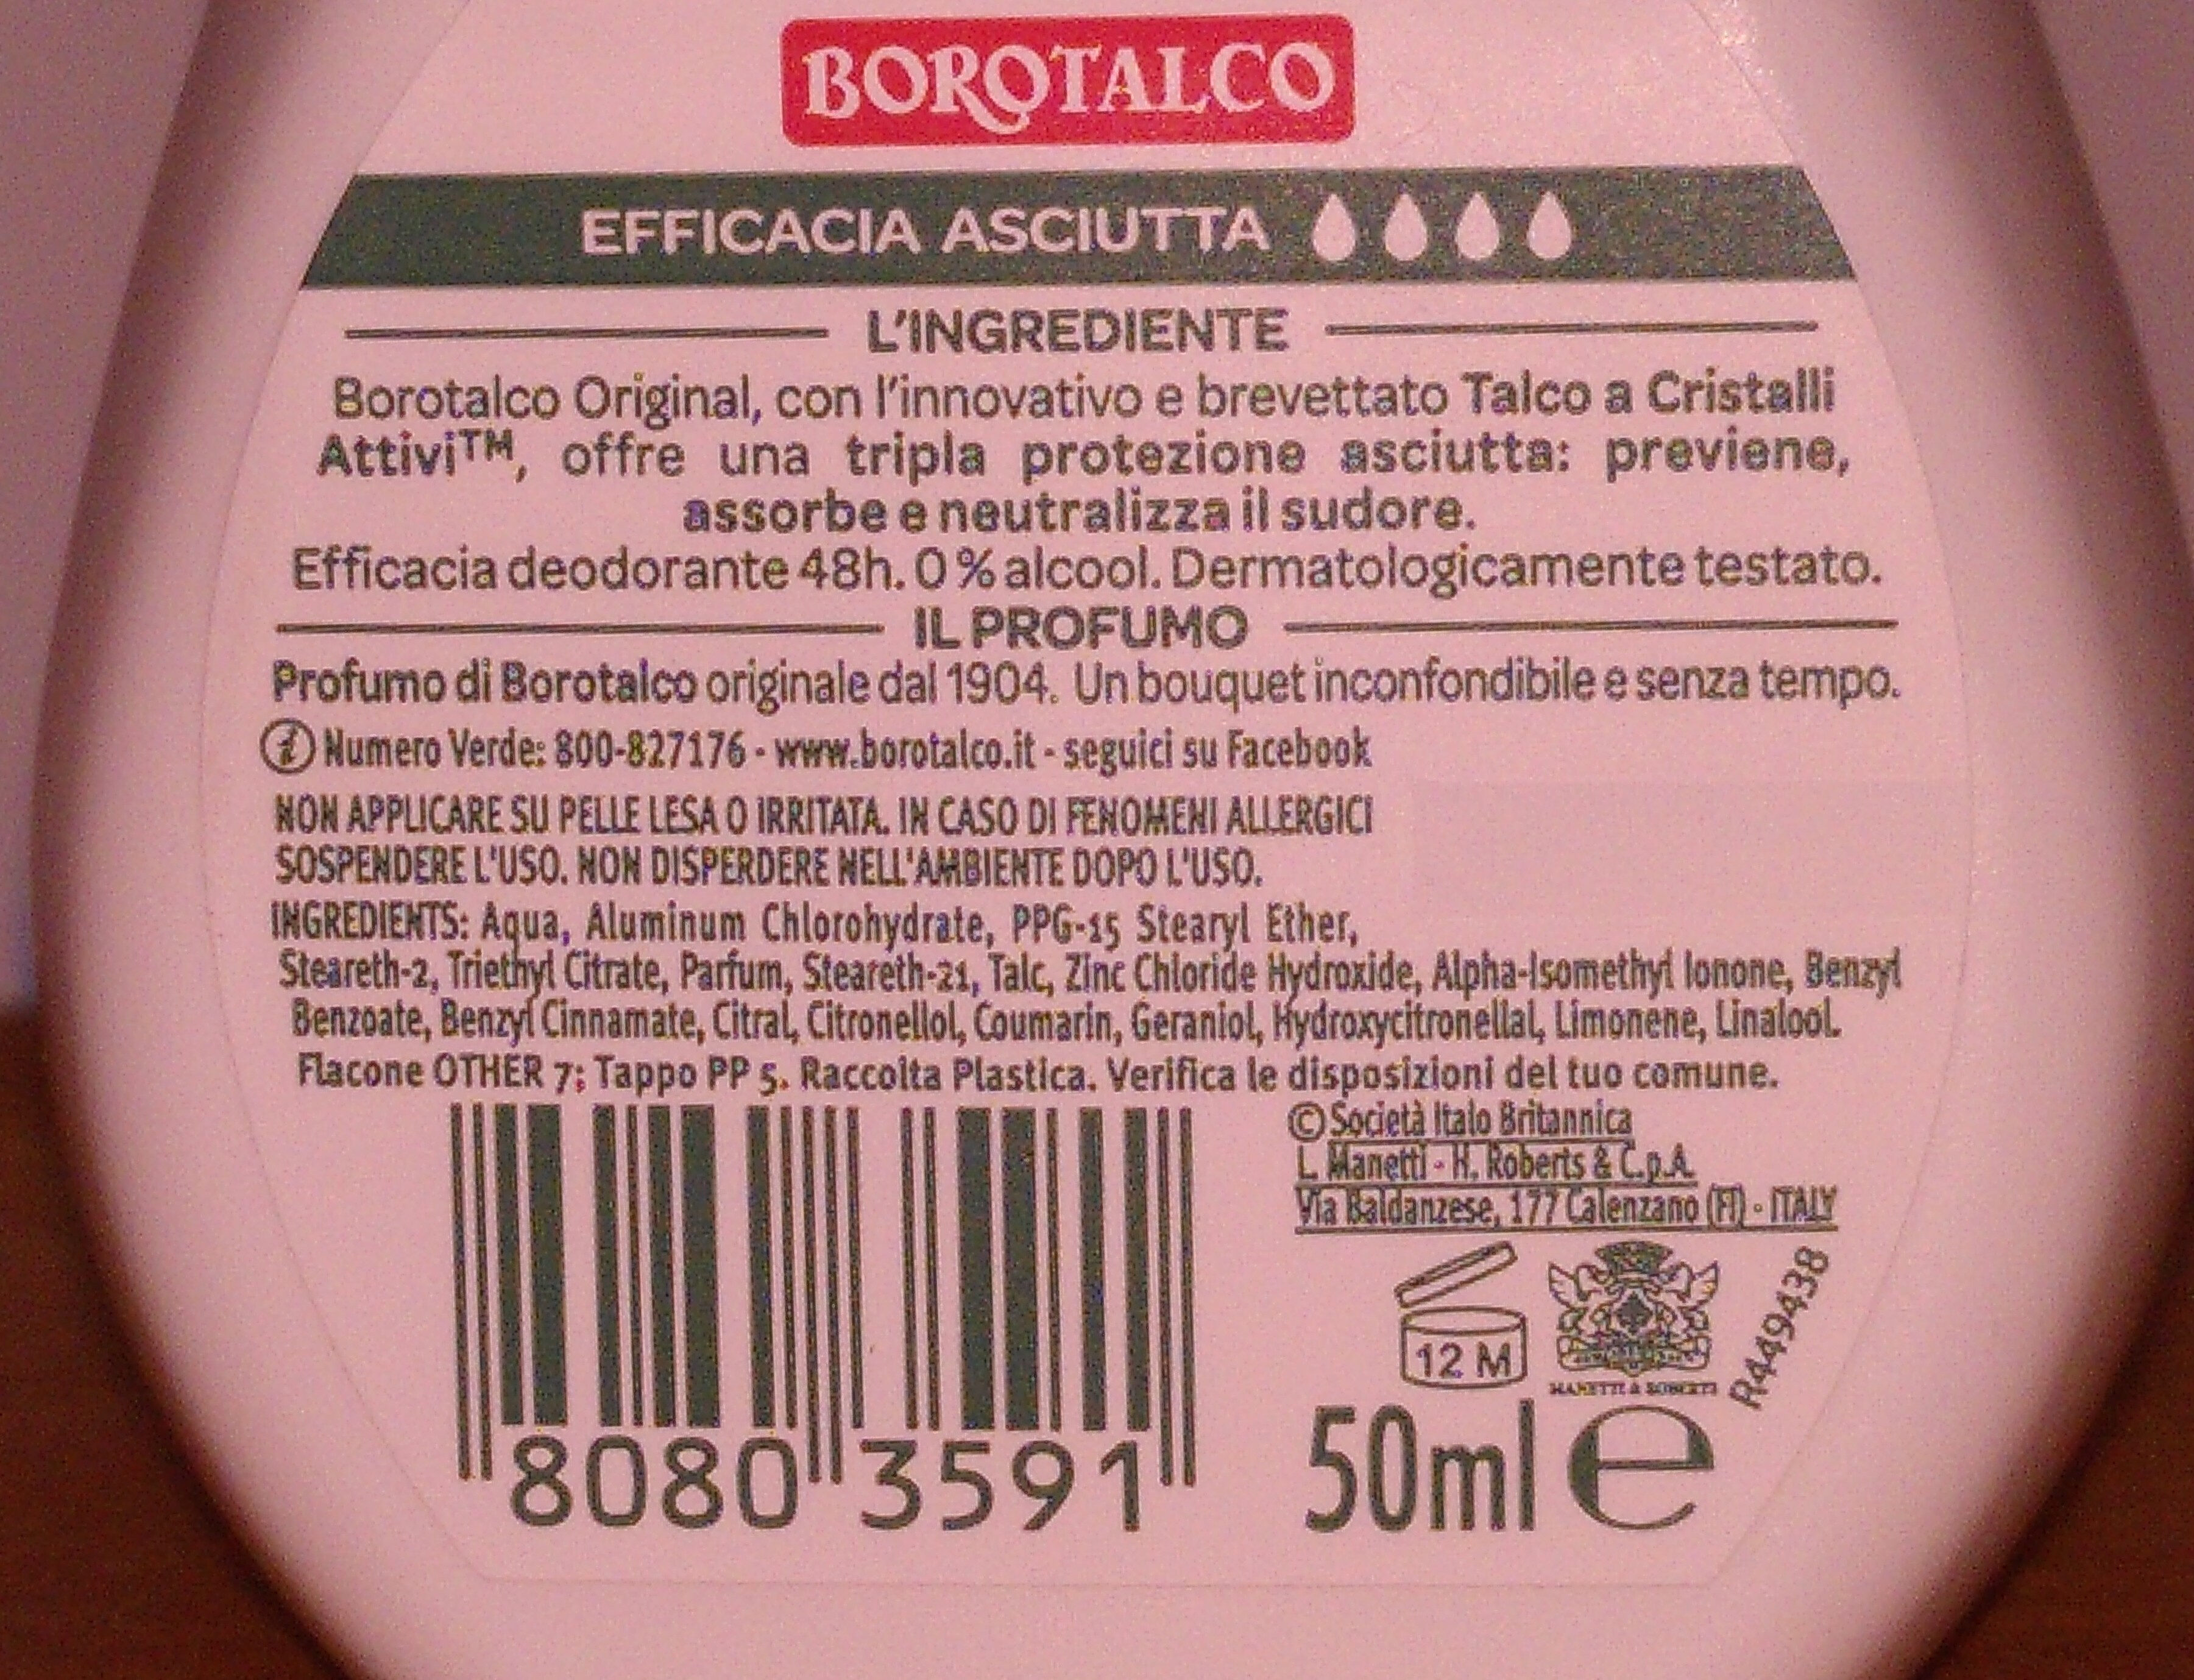 Deodorante Borotalco Original - Ingredients - it